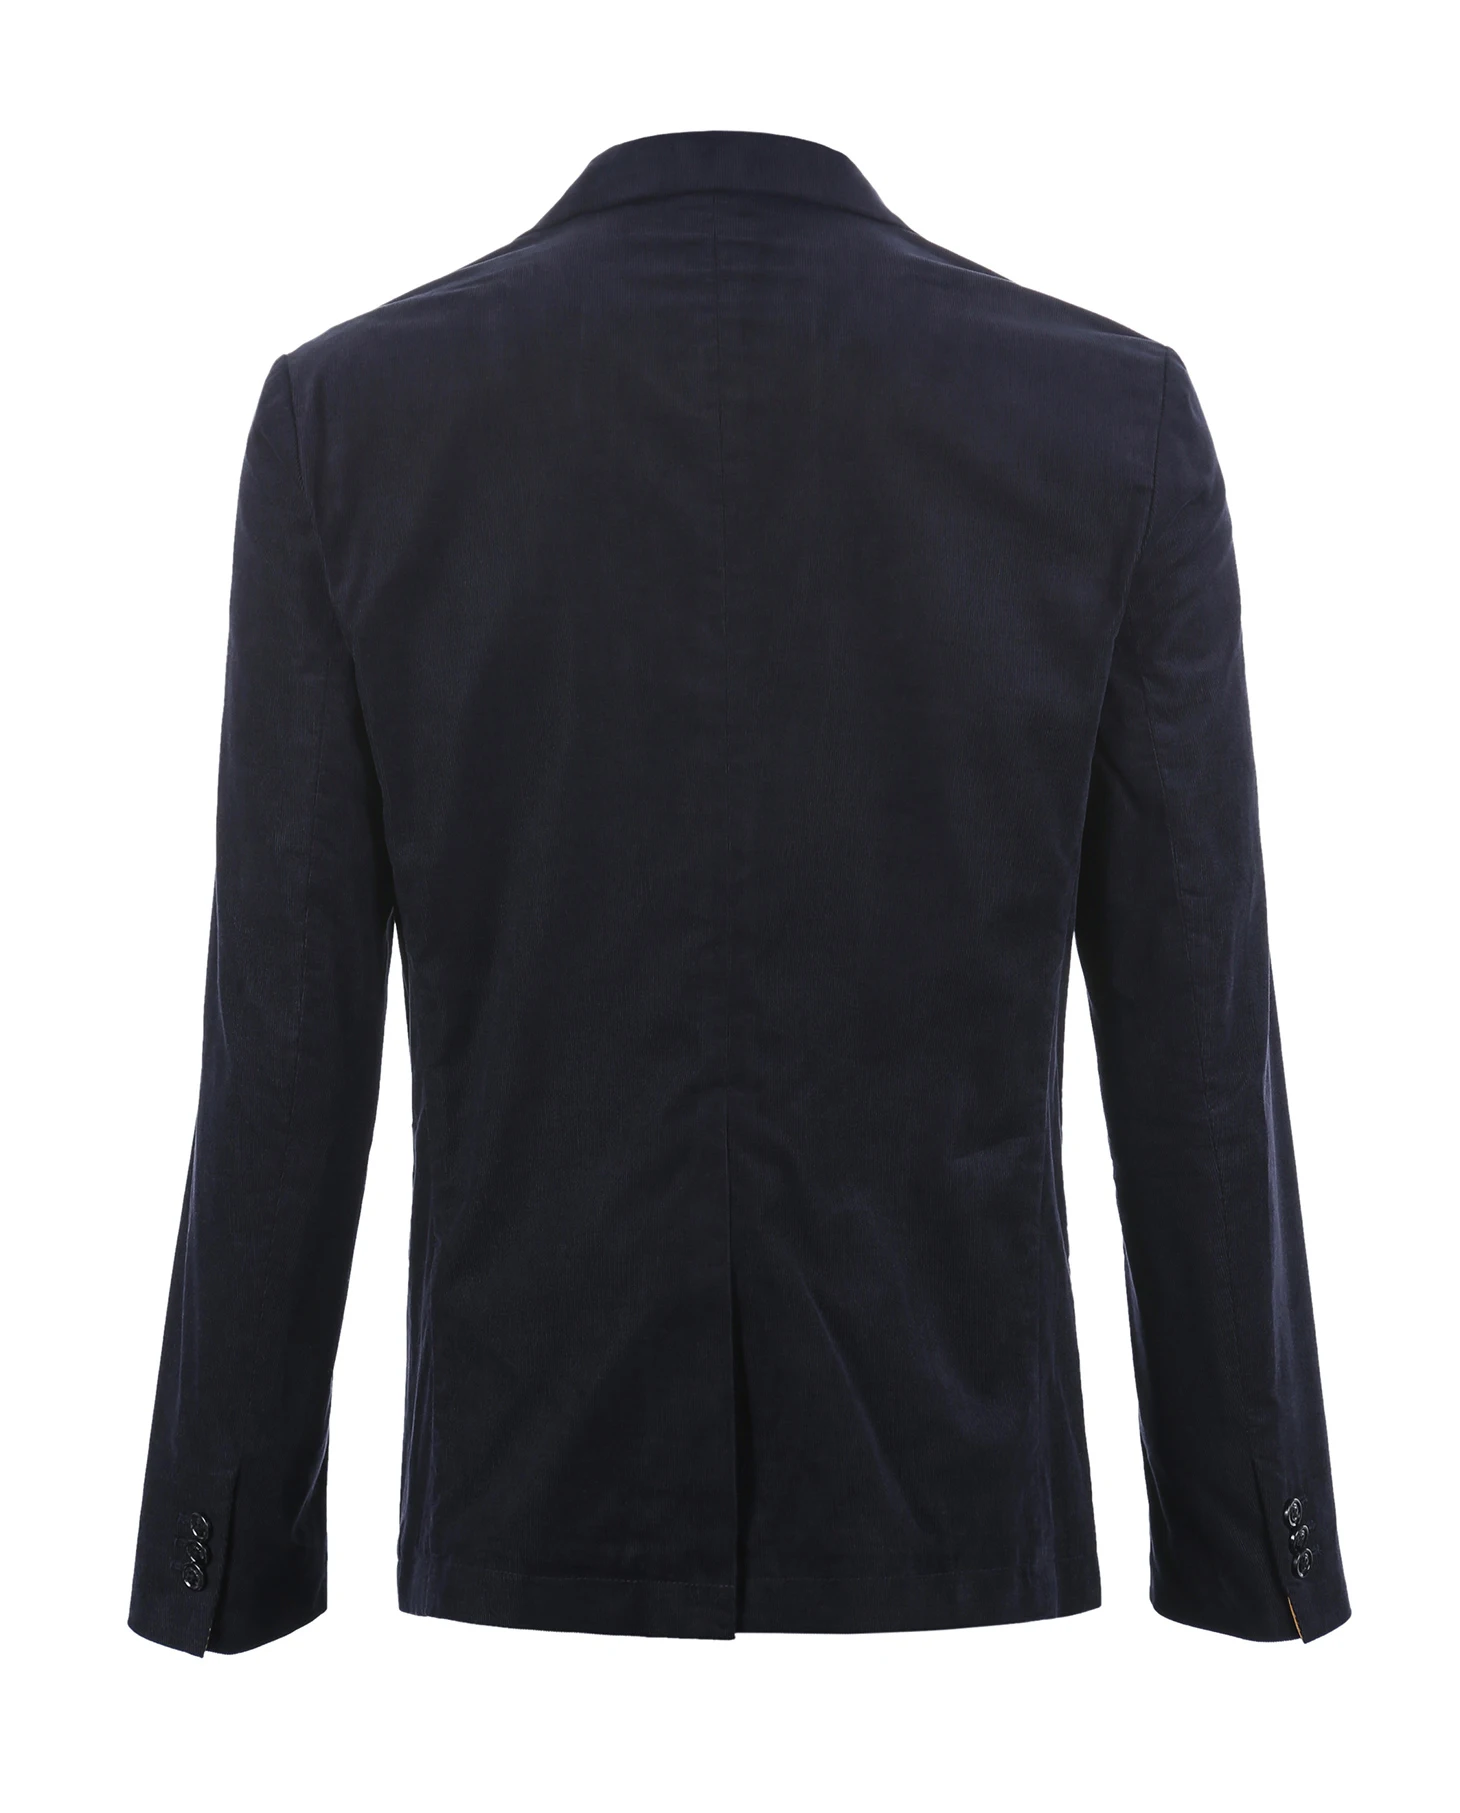 Jack Jones Бренд 2018 Новинка мужский пиджак 100% хлопок нательный фасон два пуговицы мужский костюм бизнесный 217108501